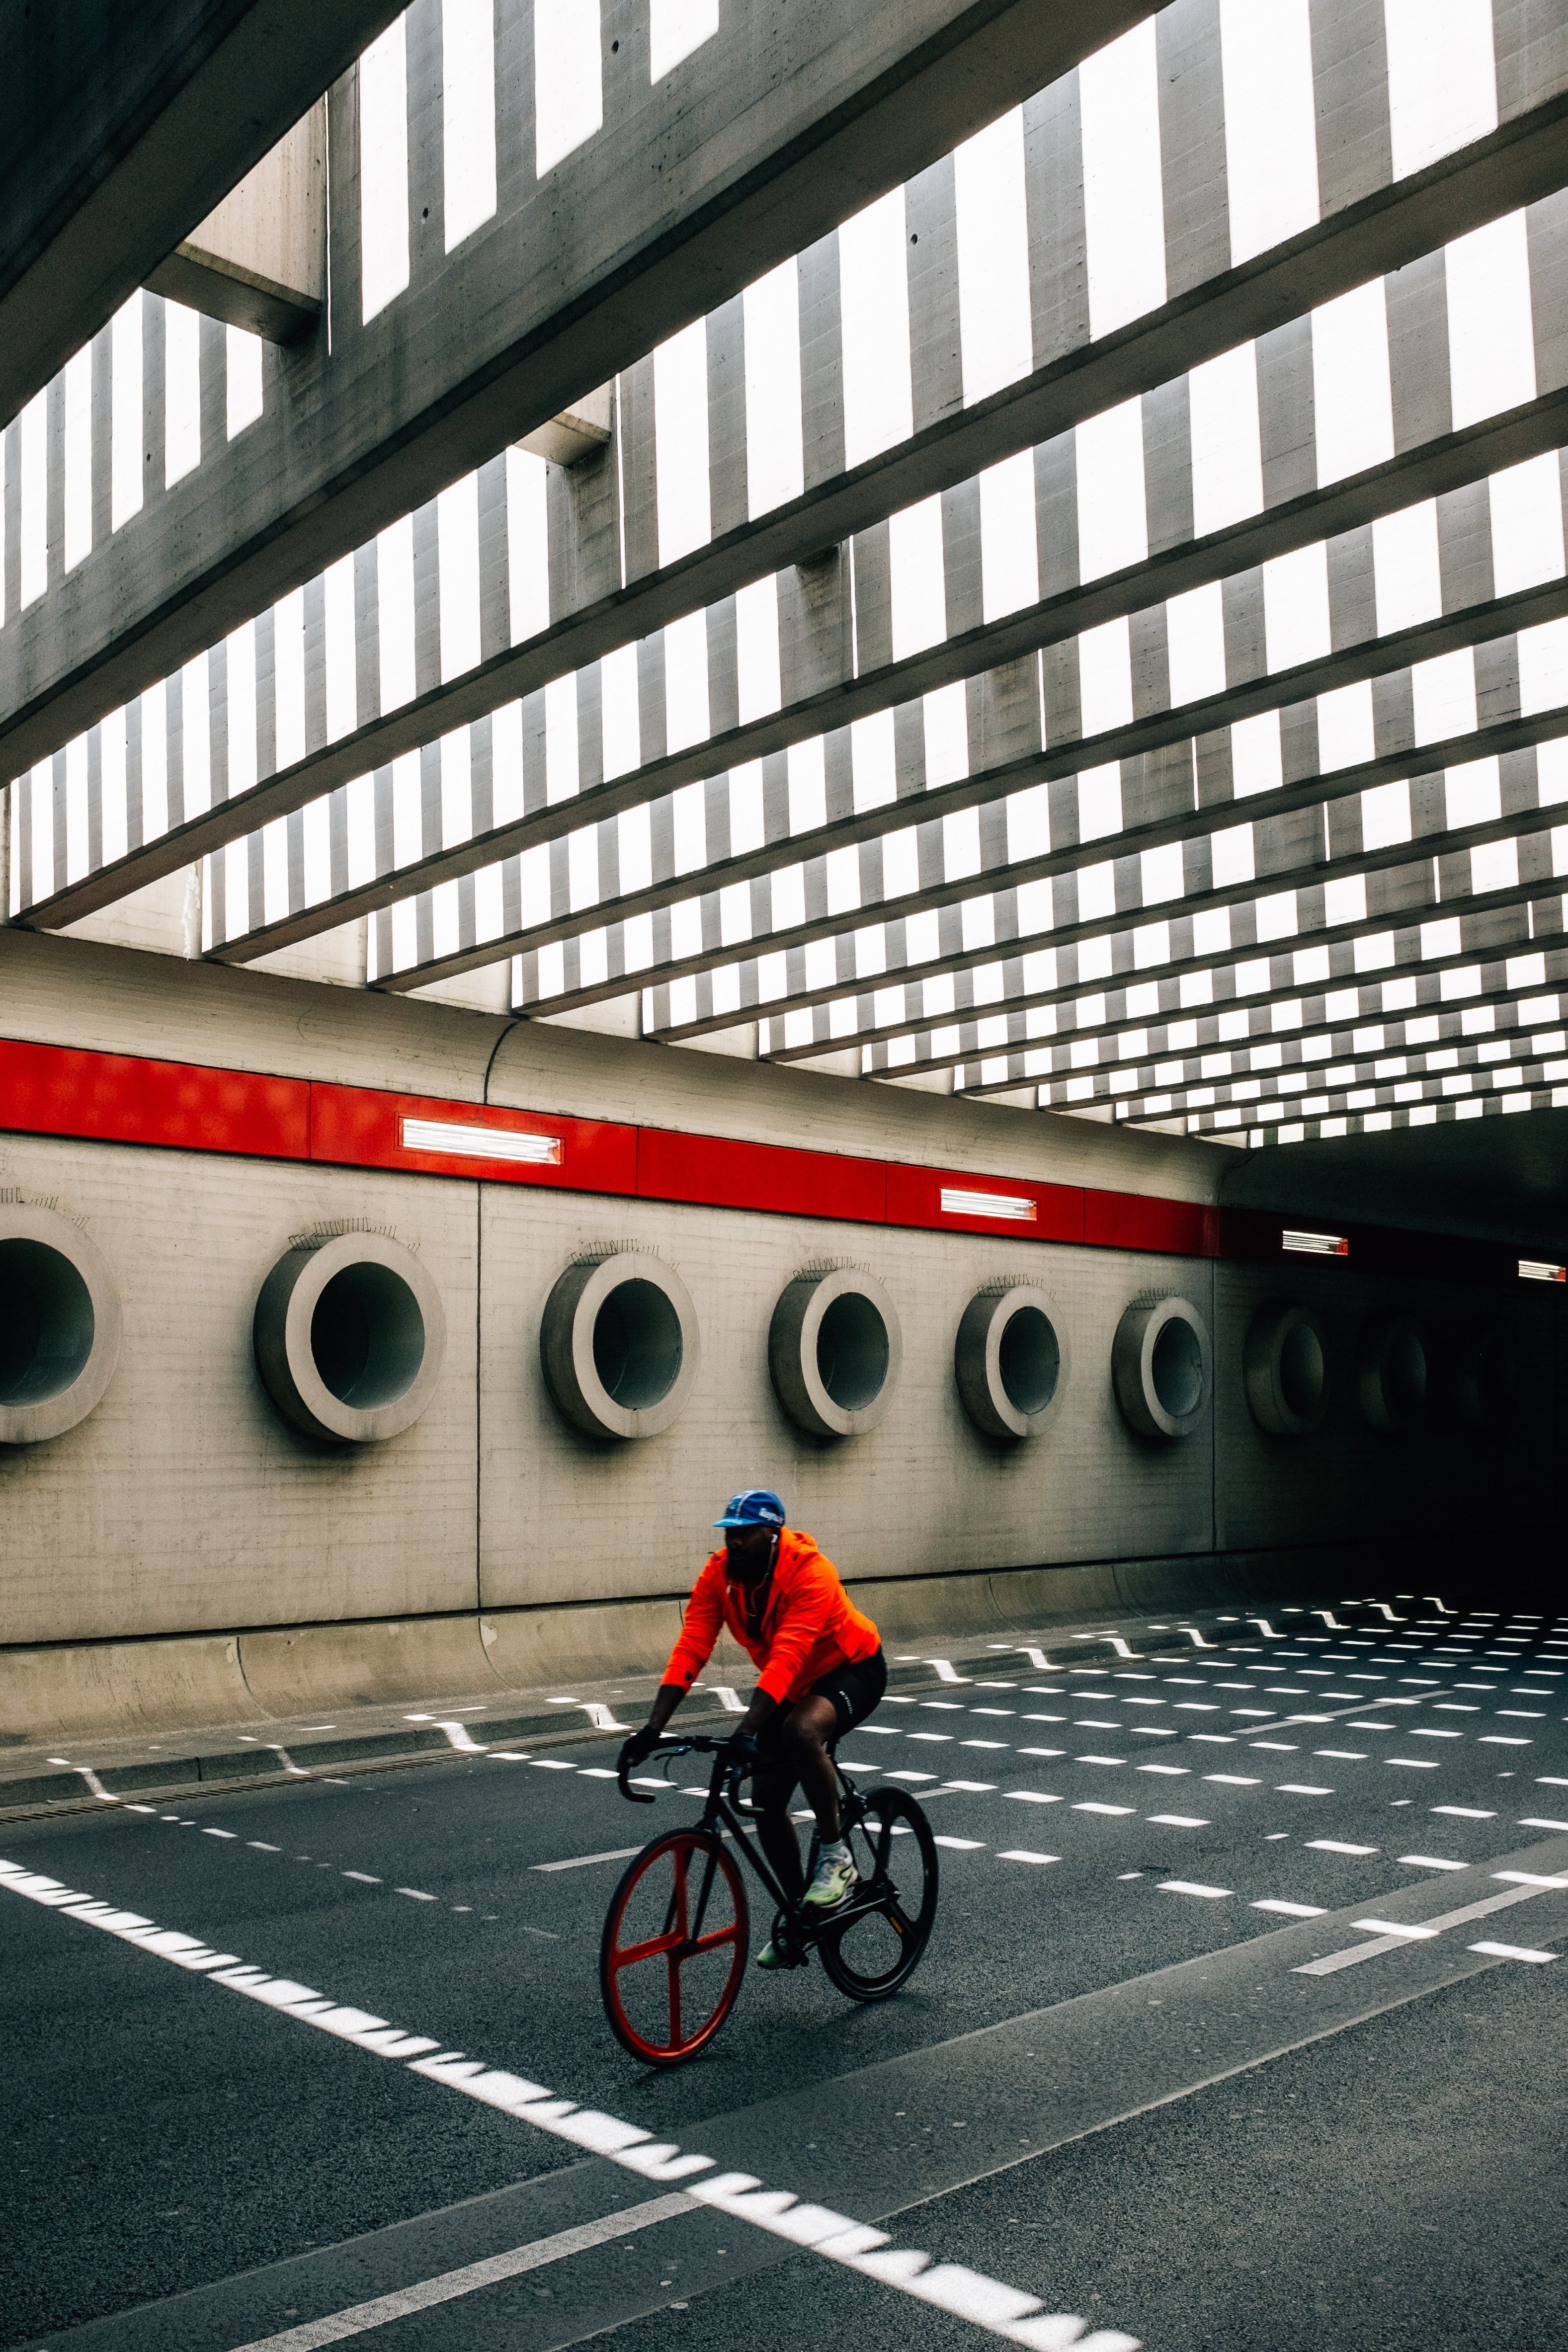 橋の下のオレンジ色の乗り物の自転車の人写真